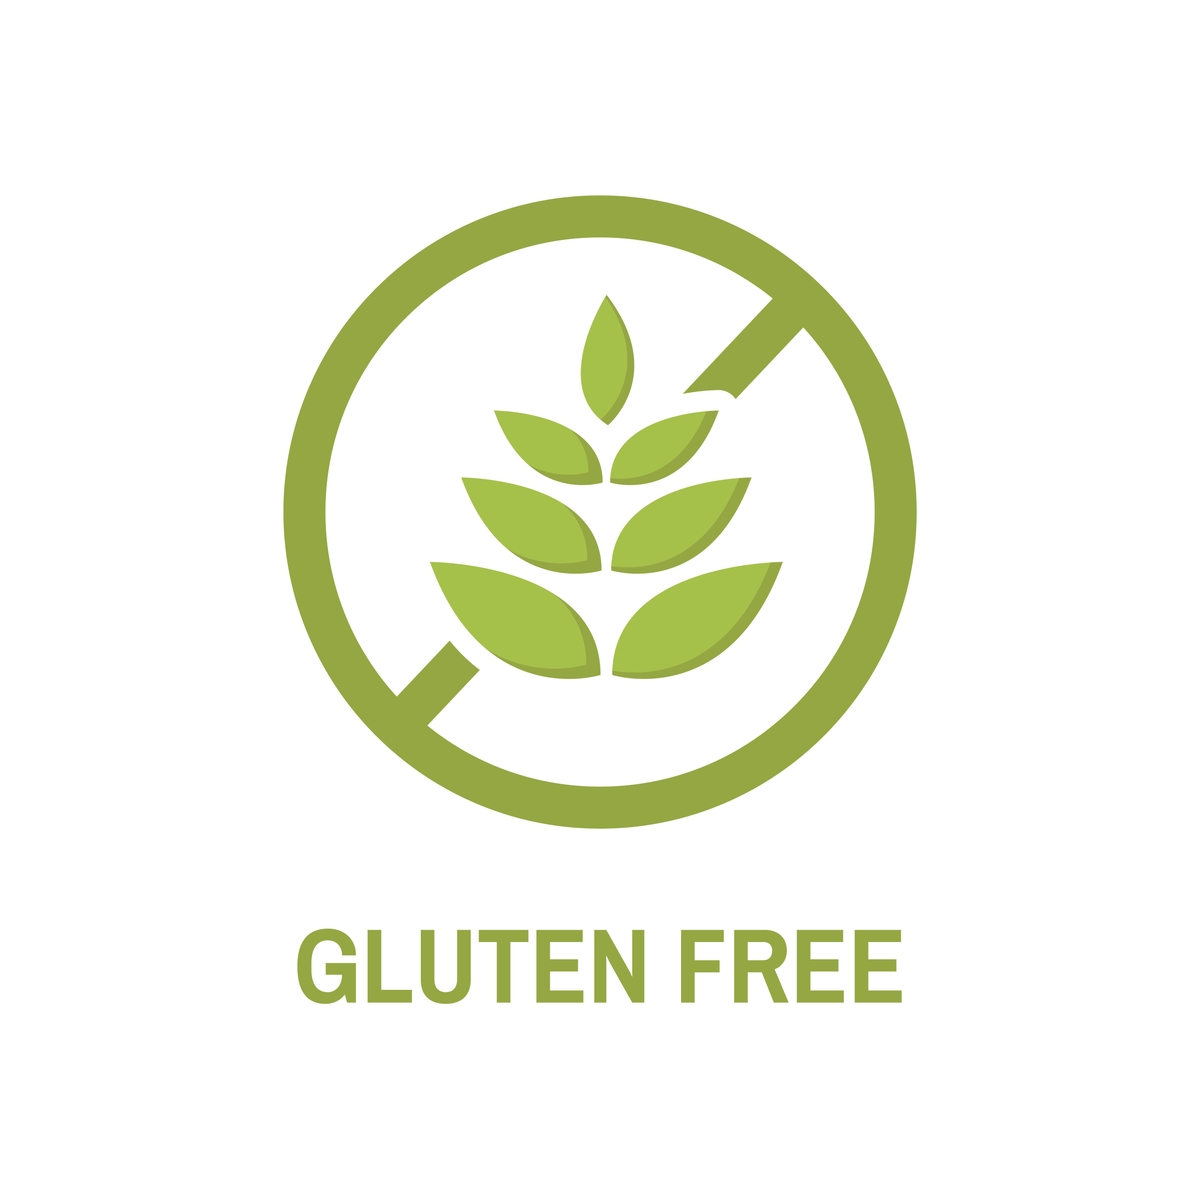 Benefits of Being Gluten-free